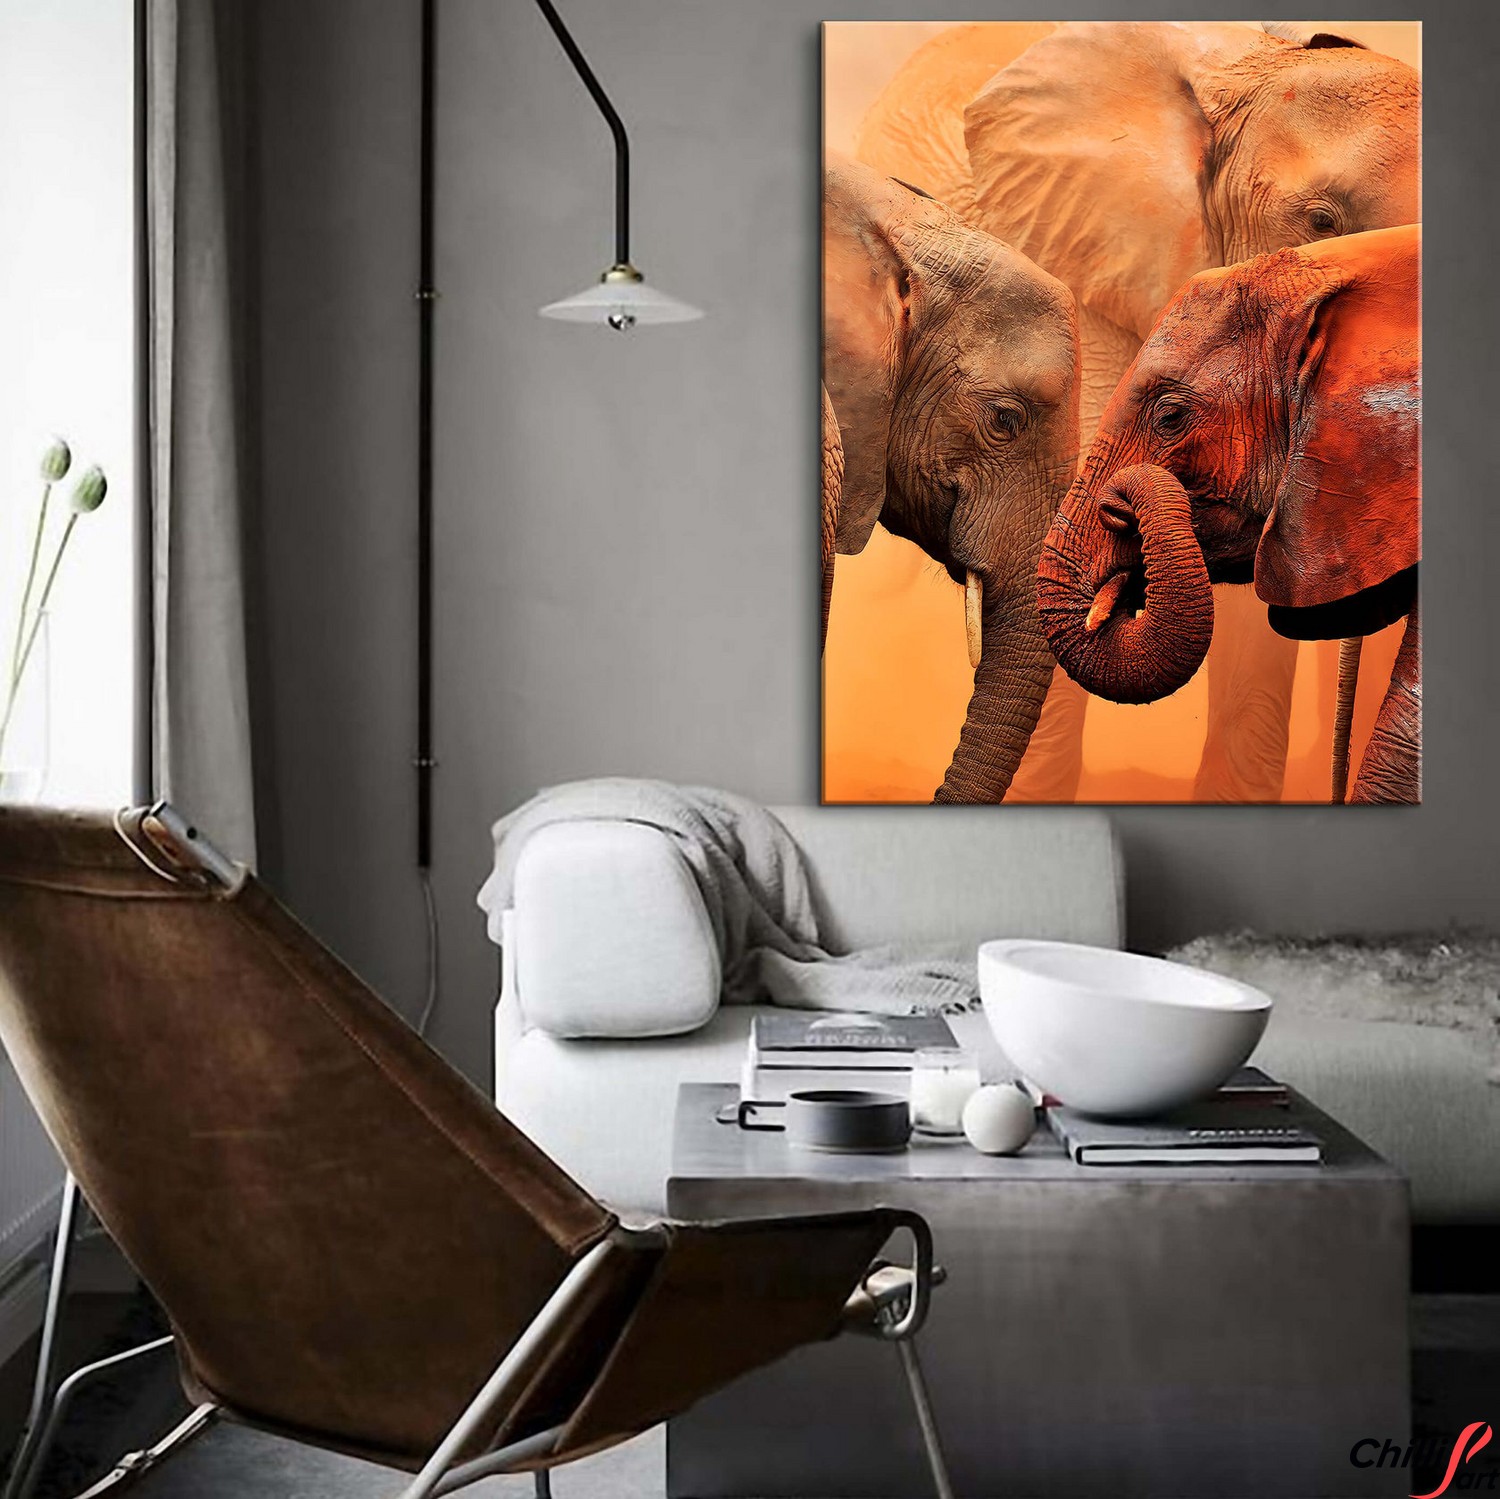 Картина Clay Elephants